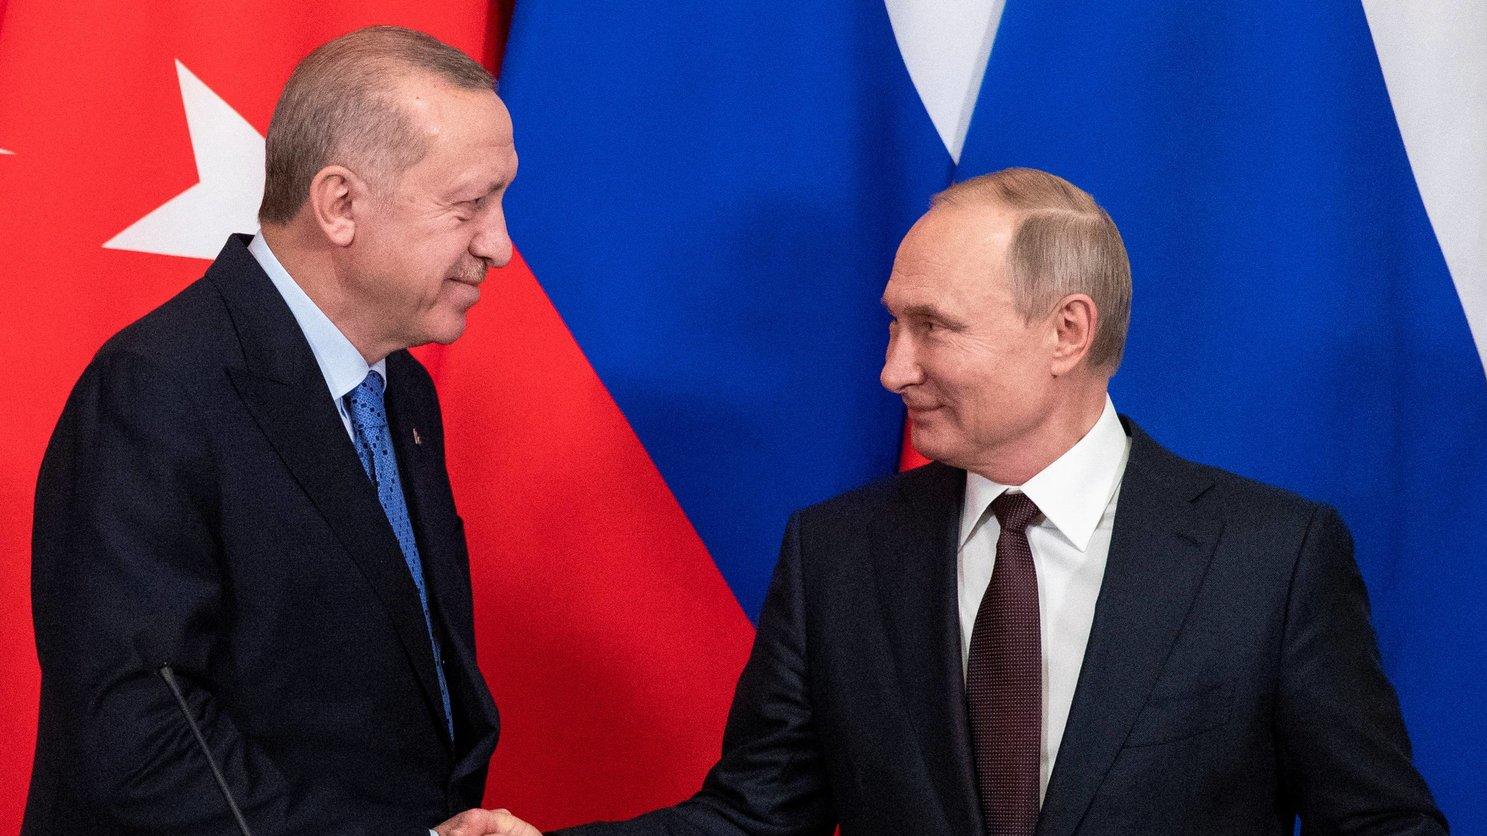 فلاديمير بوتين سيبحث عدة ملفات مع الرئيس التركي رجب طيب أردوغان